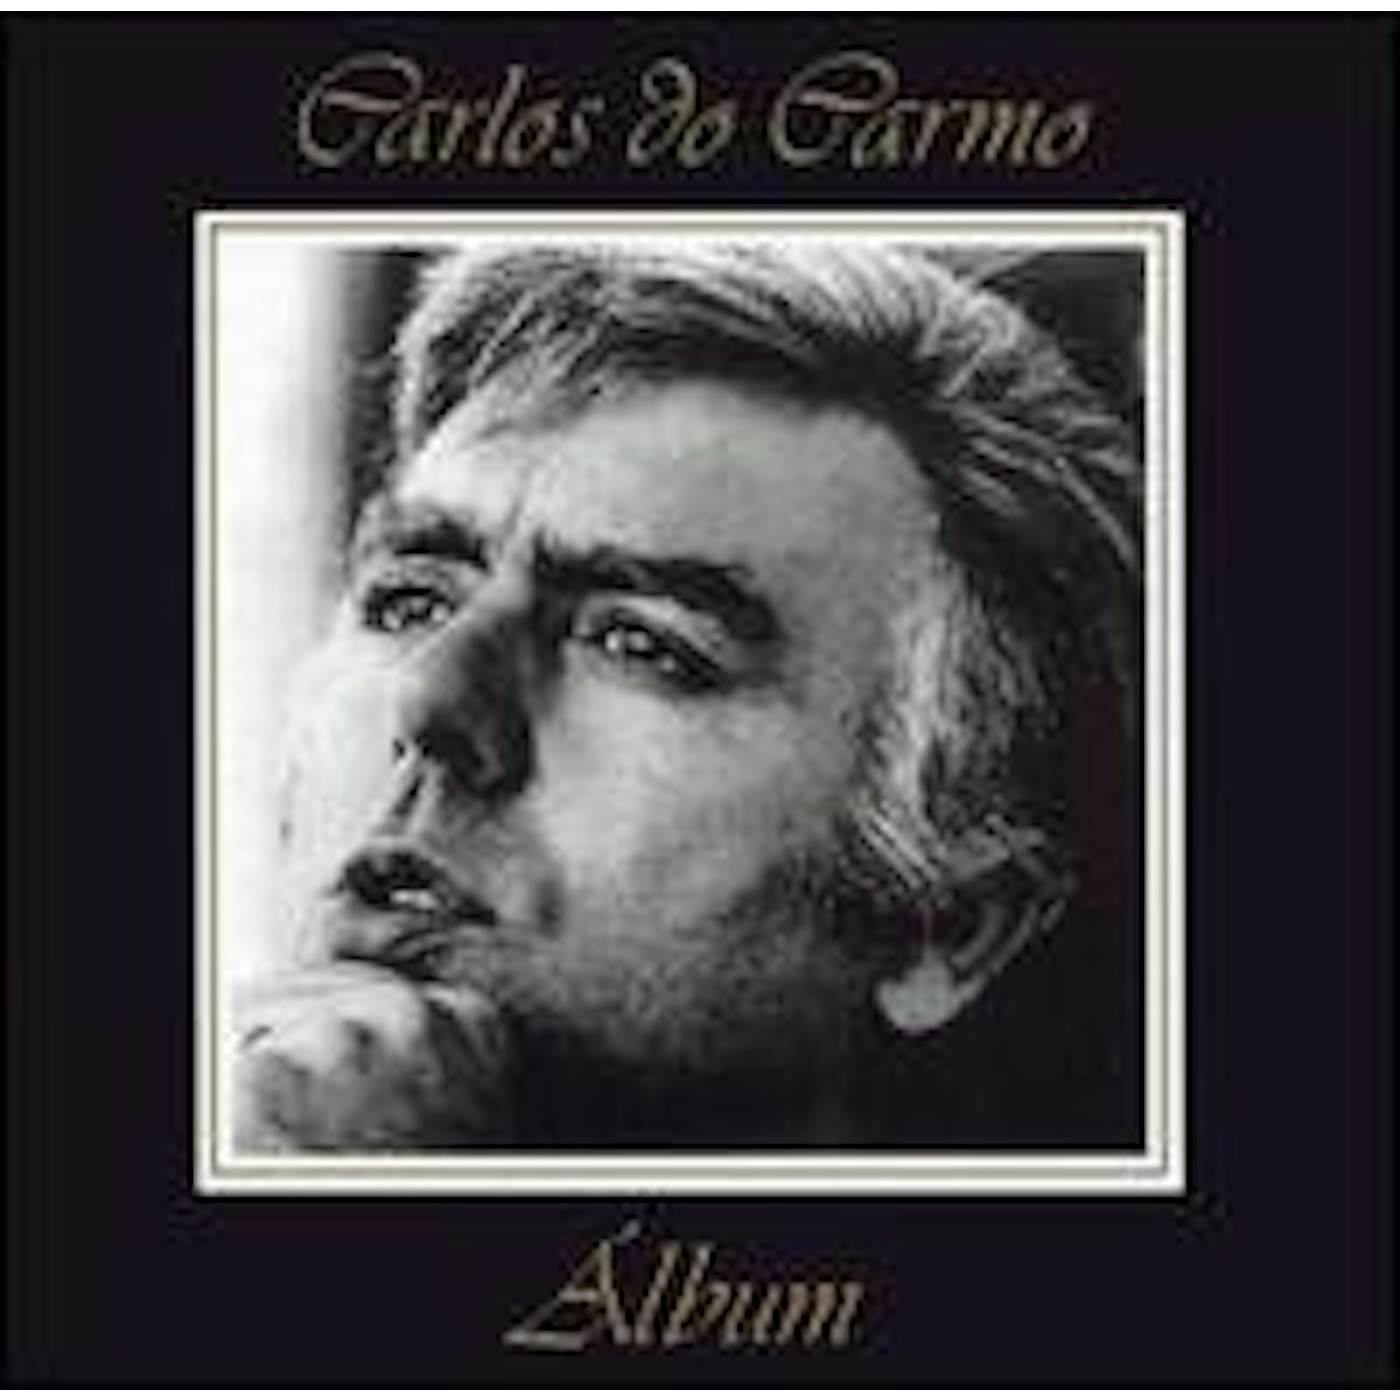 Carlos Do Carmo ALBUM CD